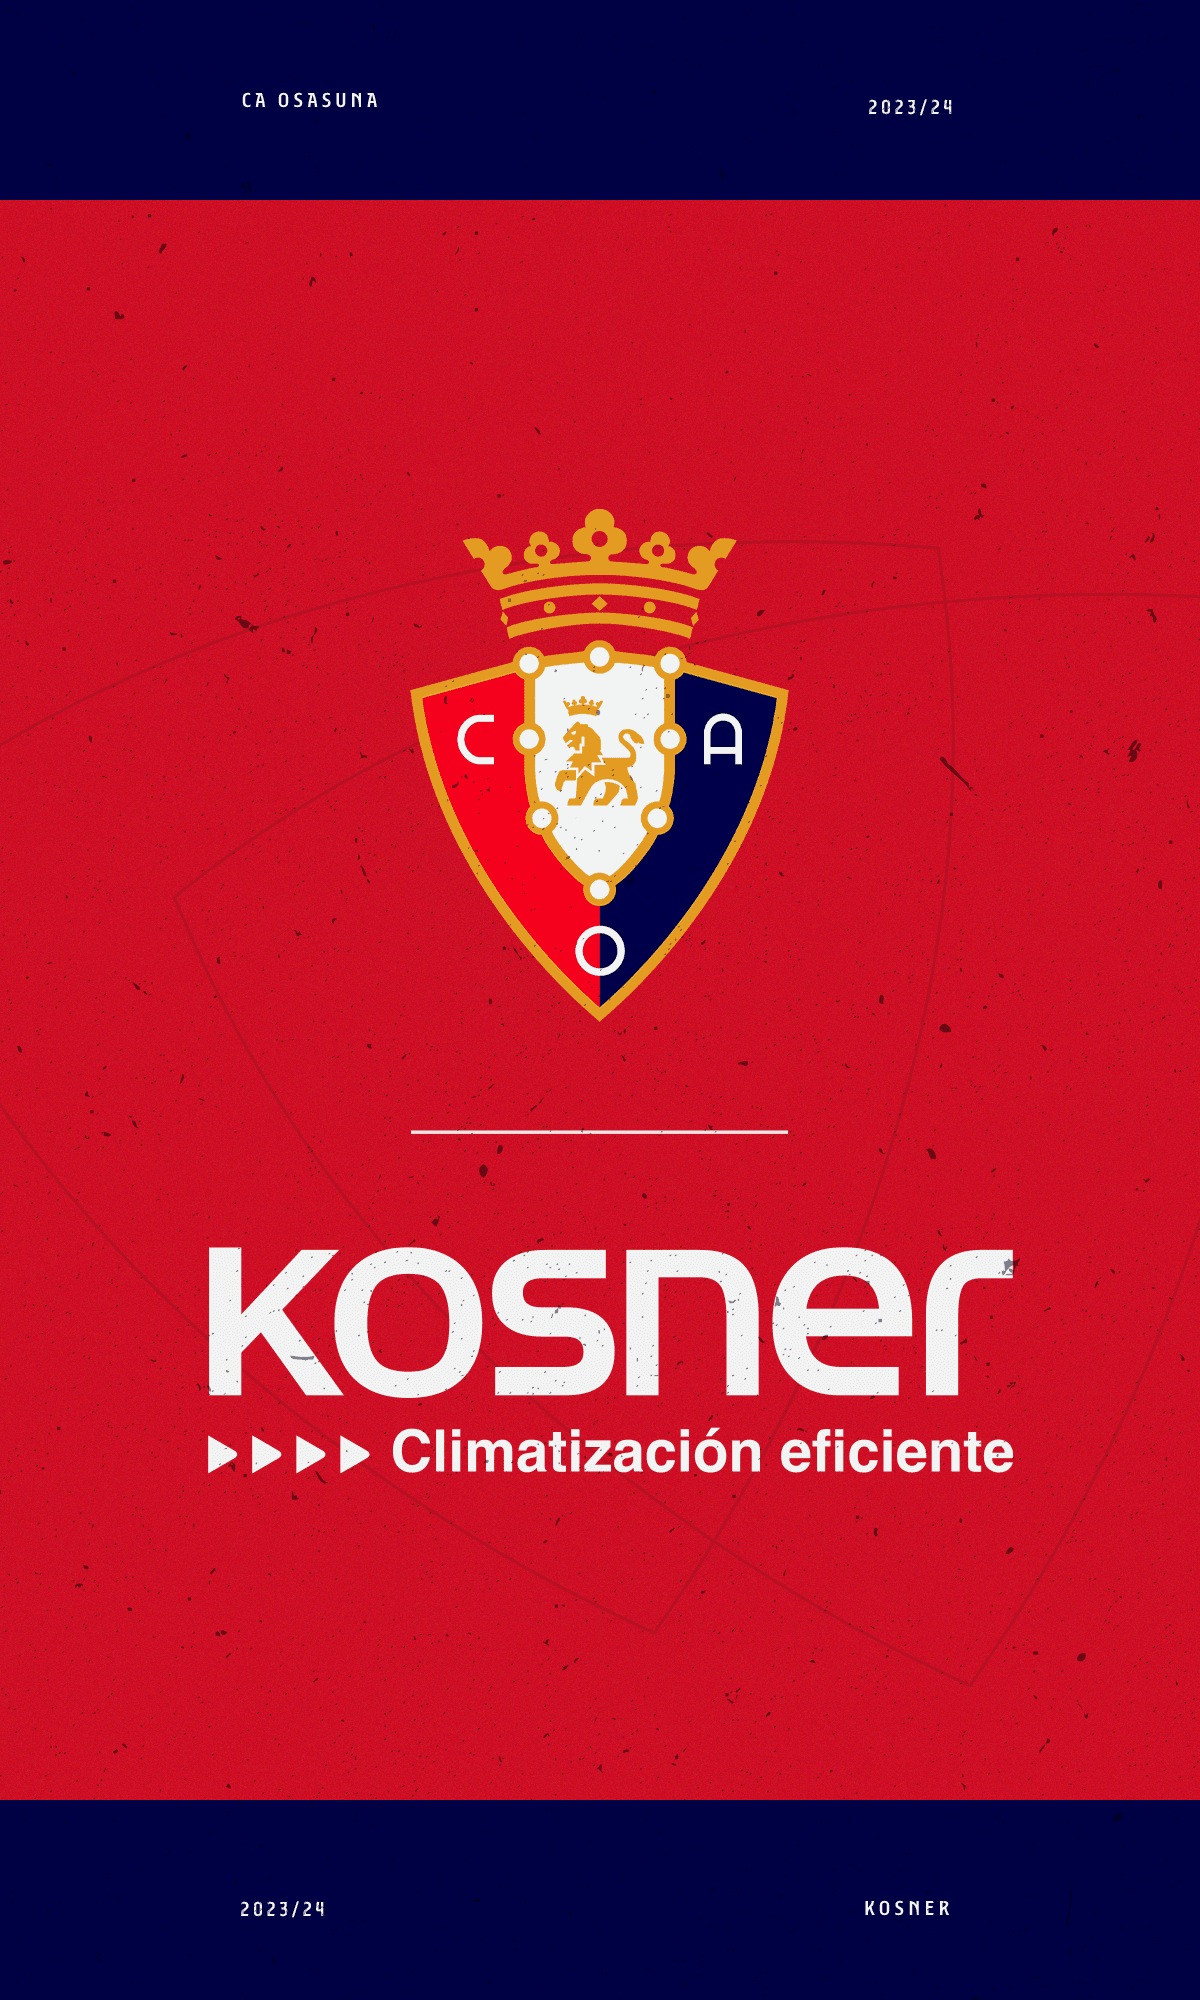 Kosner renueva como patrocinador principal de Osasuna dos temporadas más